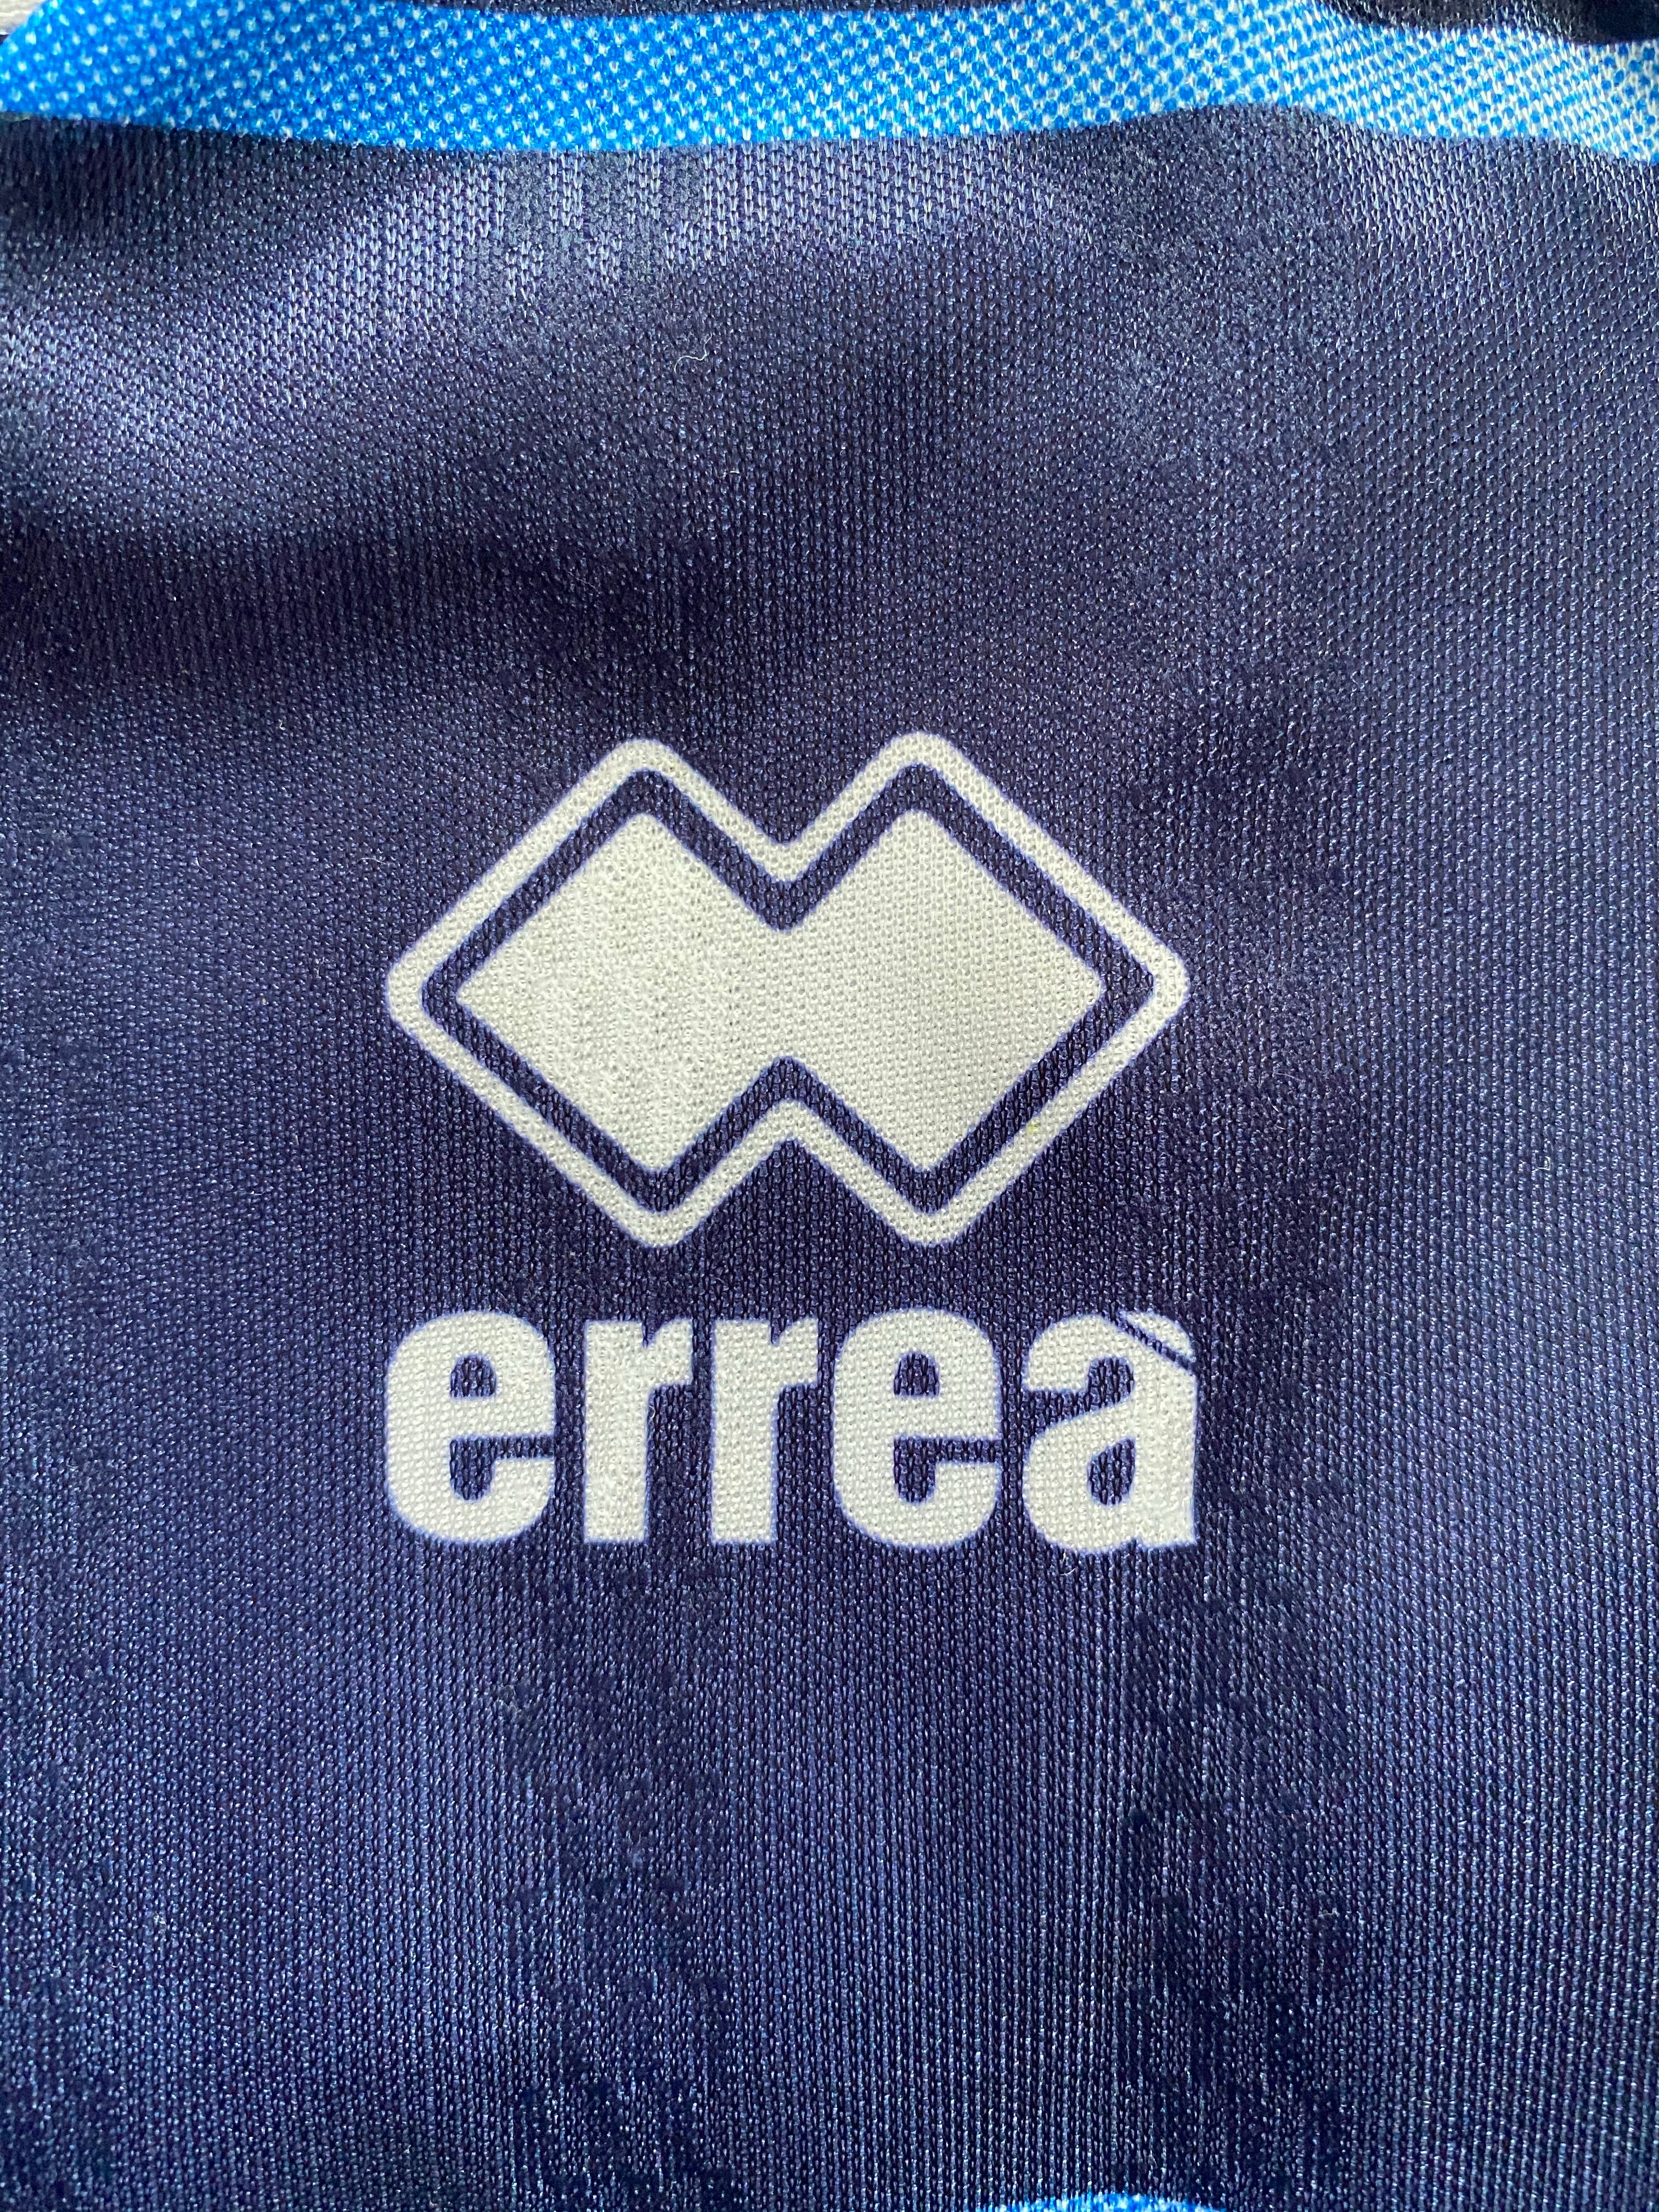 2000/01 Camiseta local del Empoli (L) 9/10